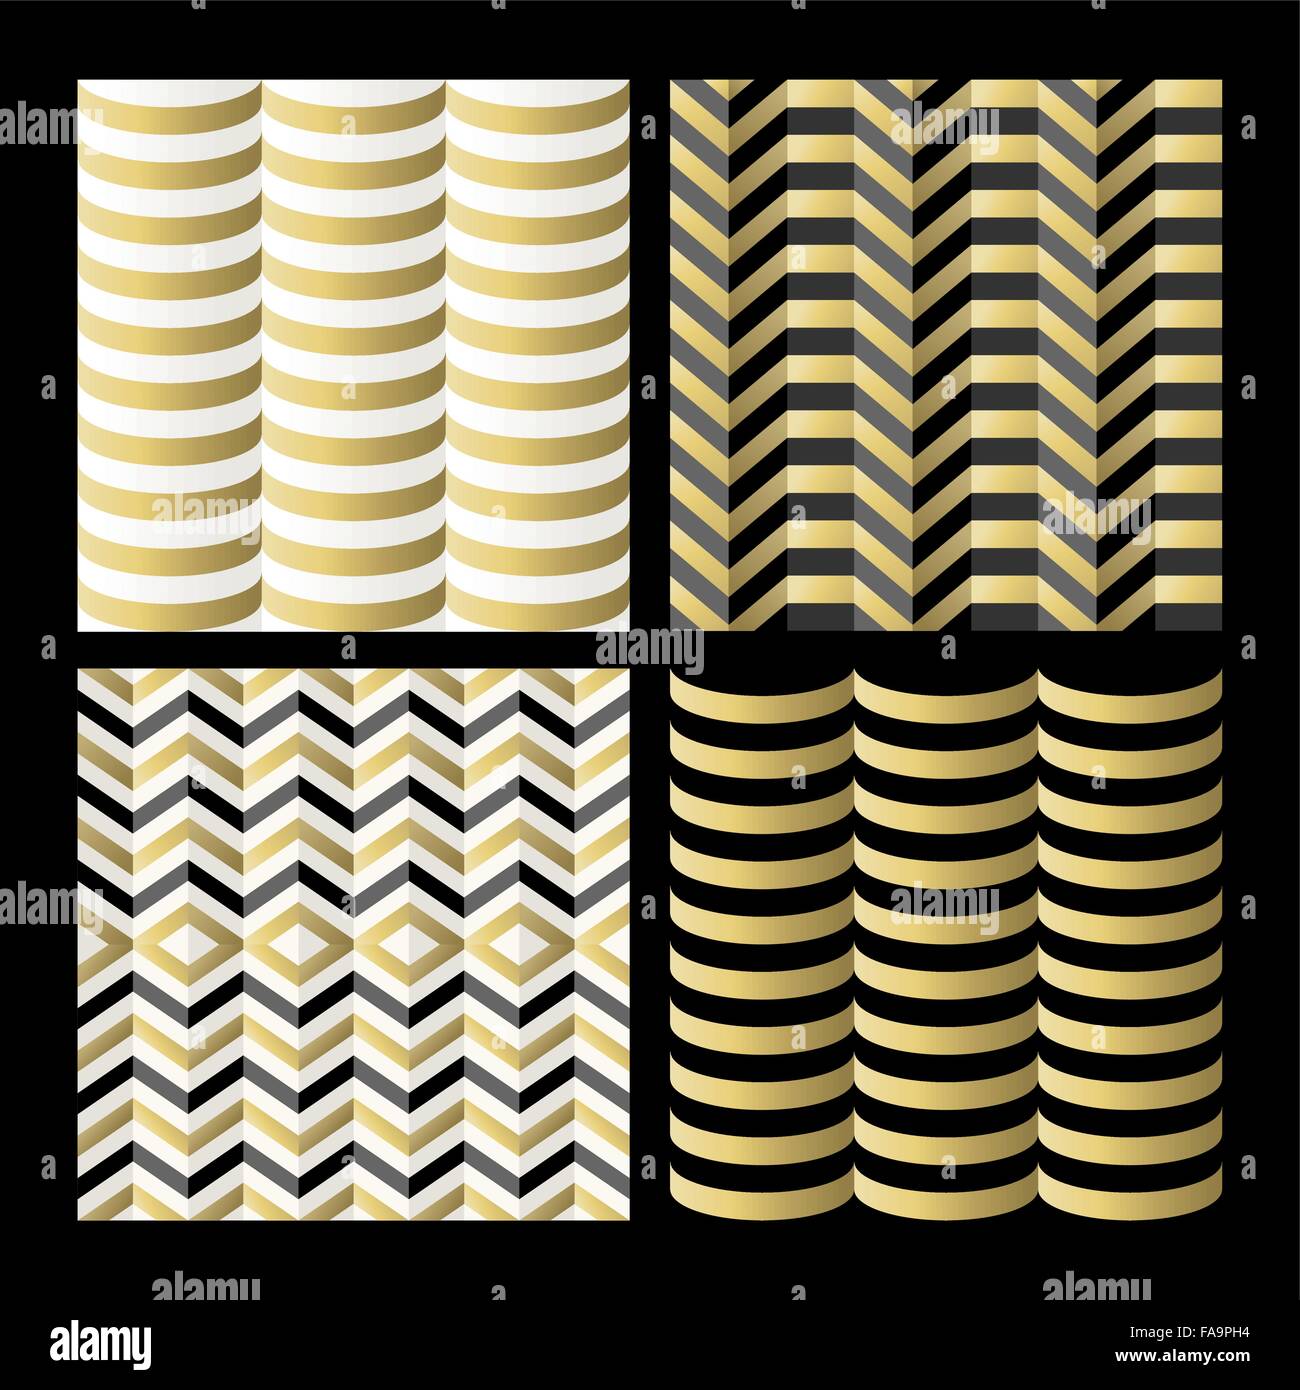 Retro seamless pattern set, vintage abstract backgrounds géométrique en couleur or. Vecteur EPS10. Illustration de Vecteur